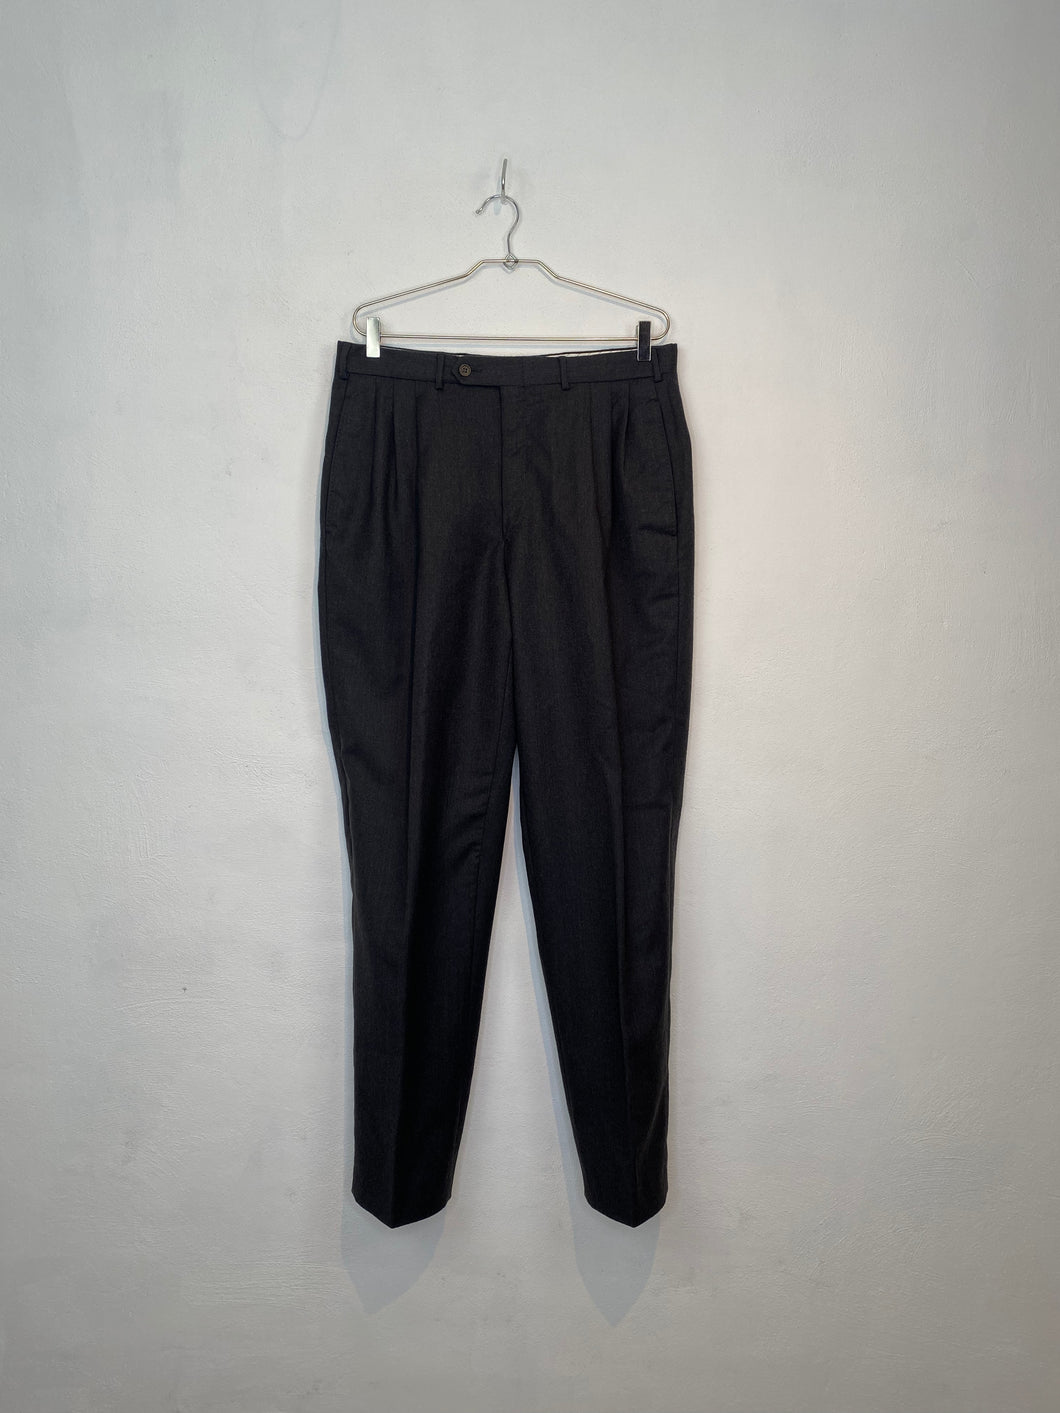 1980s GIANFRANCO FERRE light wool pants